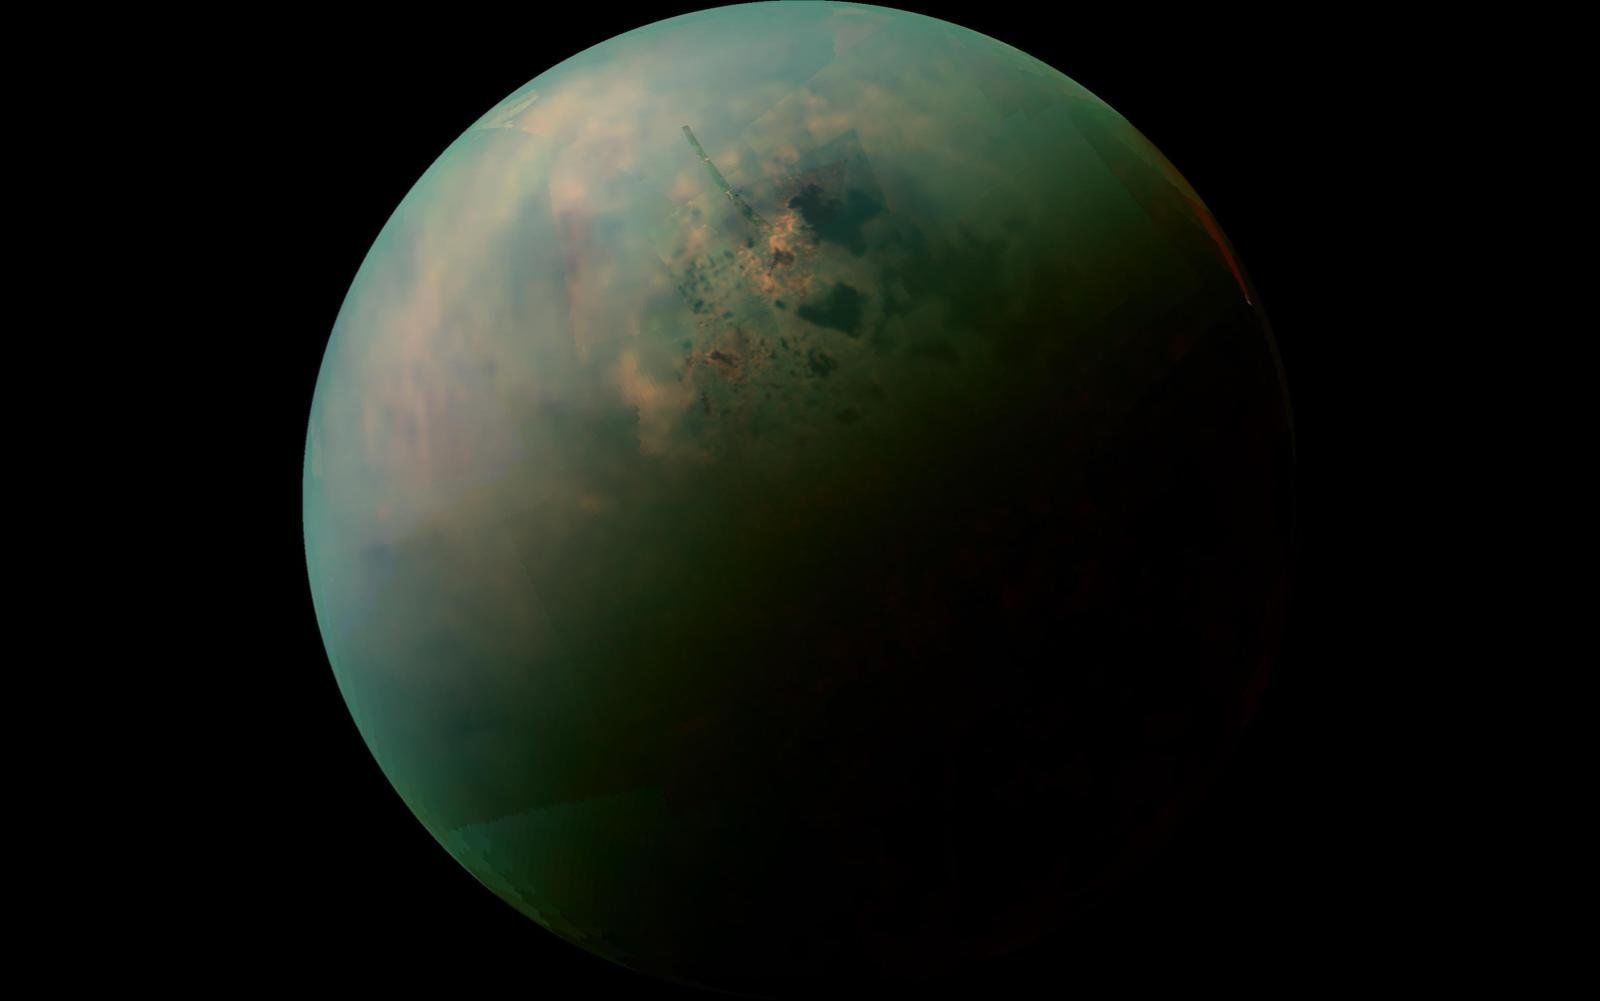 土星の月、タイタンの「世界地図」完成。地球同様に多様な地形、カッシーニ100回超のフライバイデータから